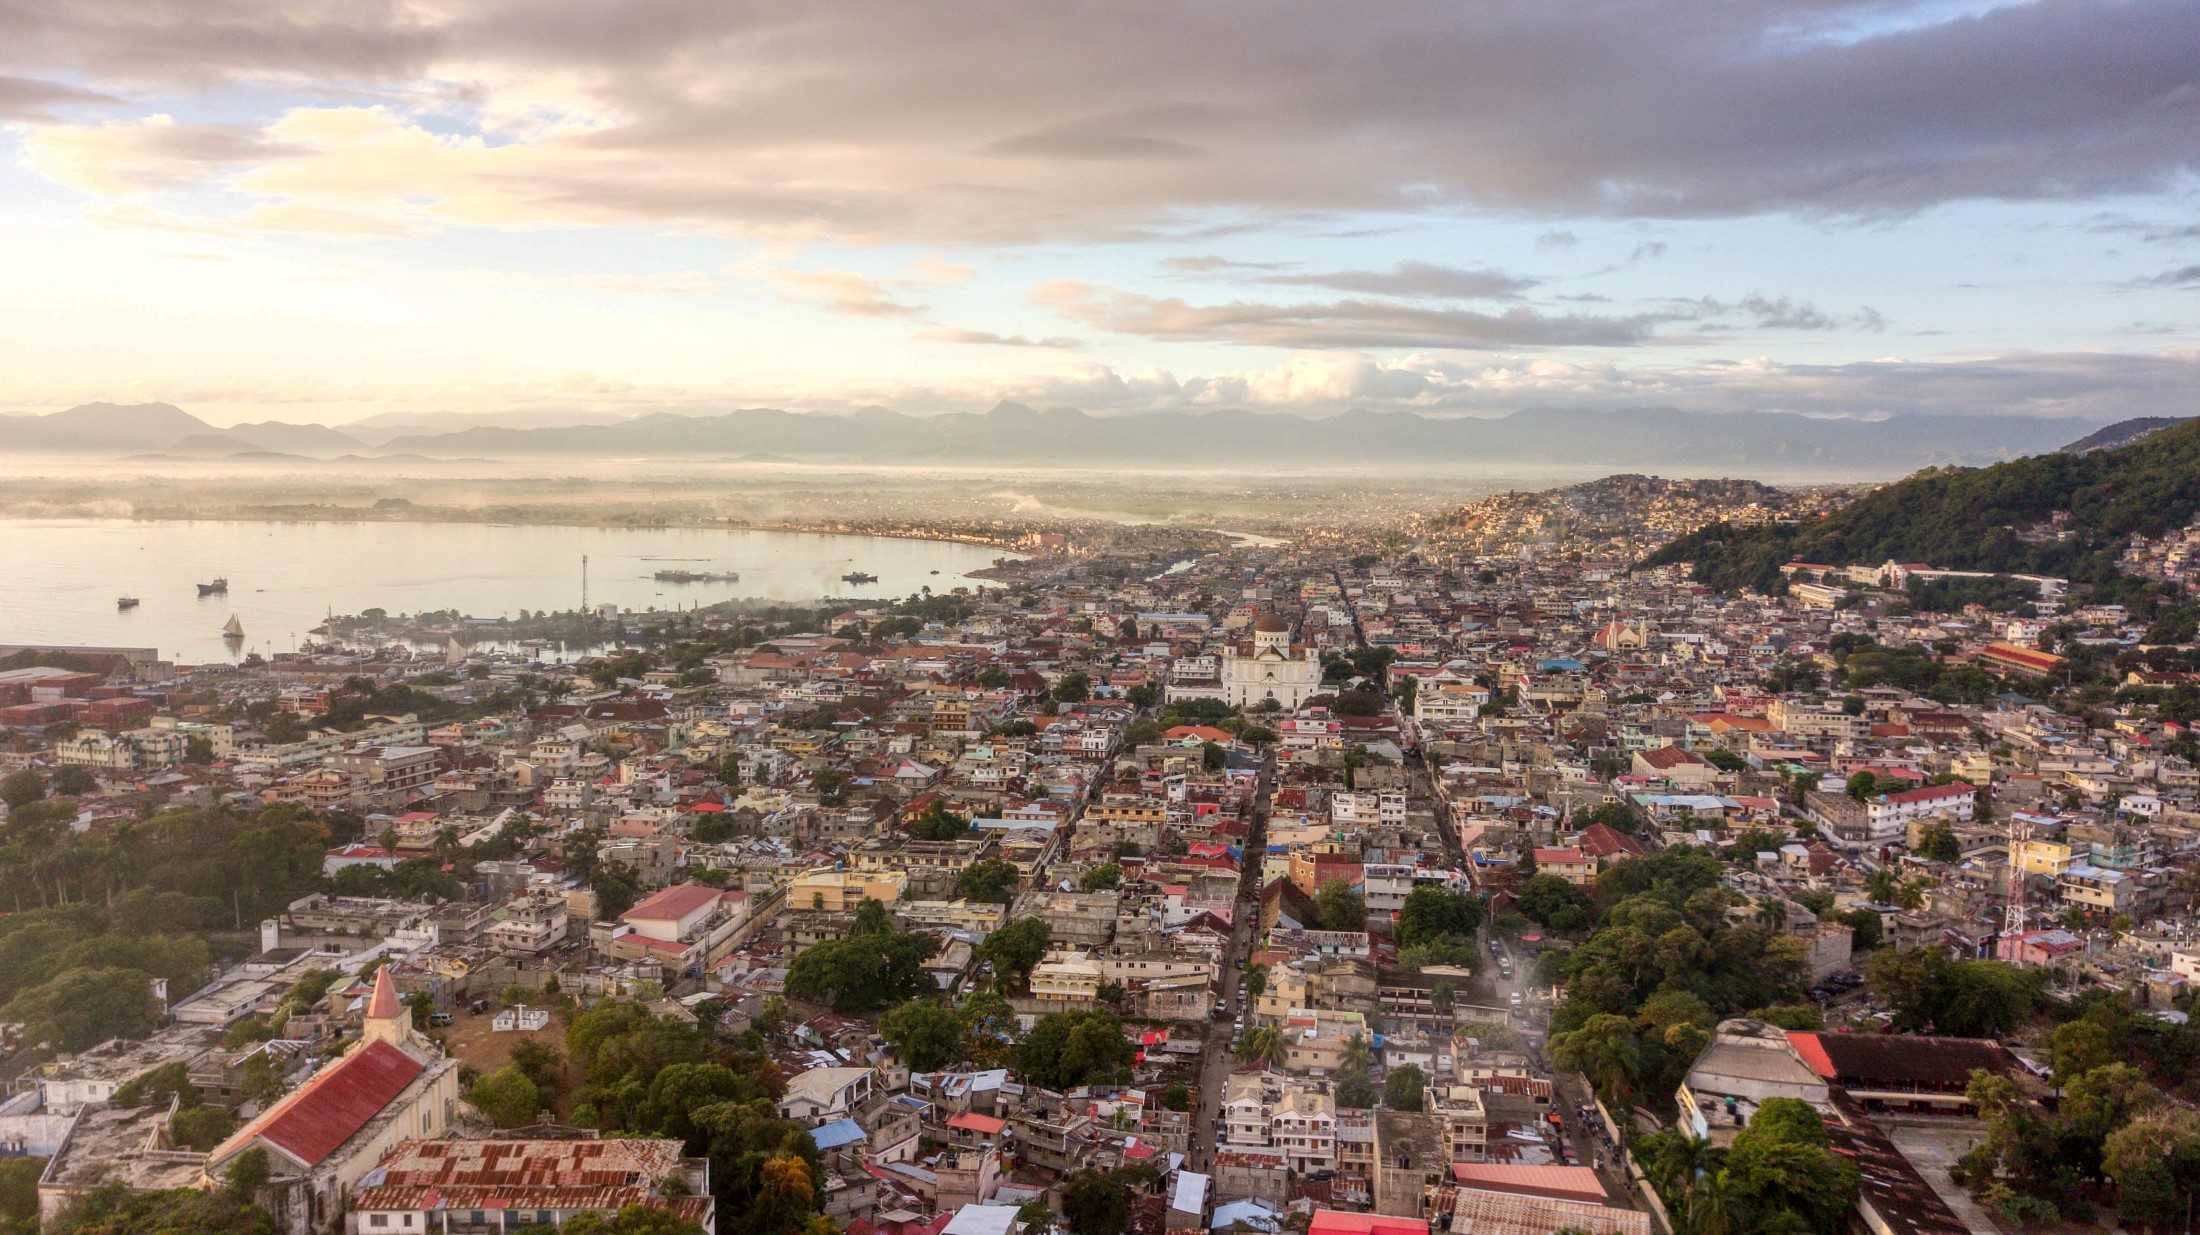 Widok z lotu ptaka na Cap-Haitien, pejzaż miejski Haiti o wschodzie słońca